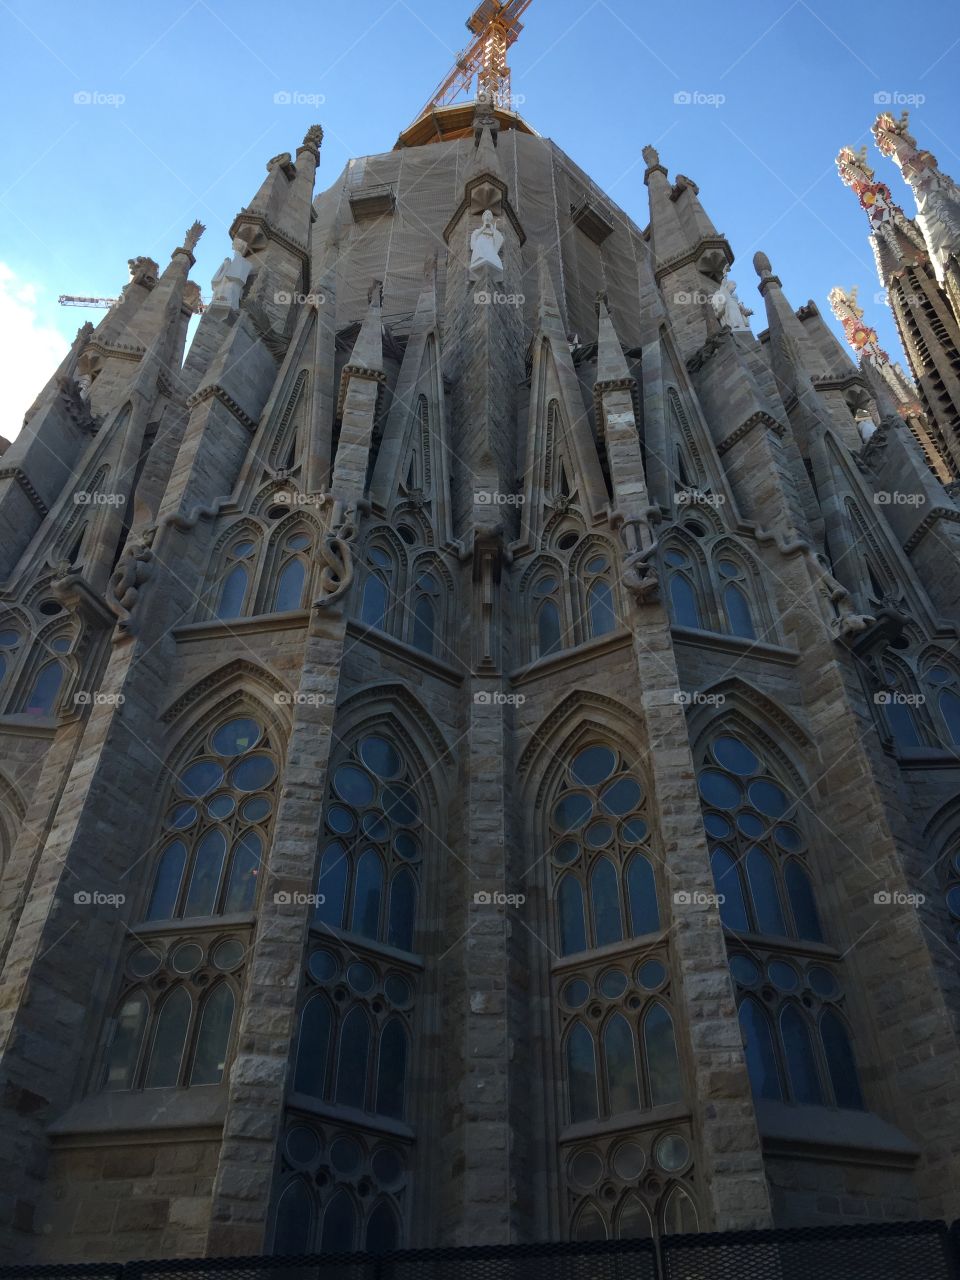 Side view with interesting windows of the Basilica de la Sagrada Familia